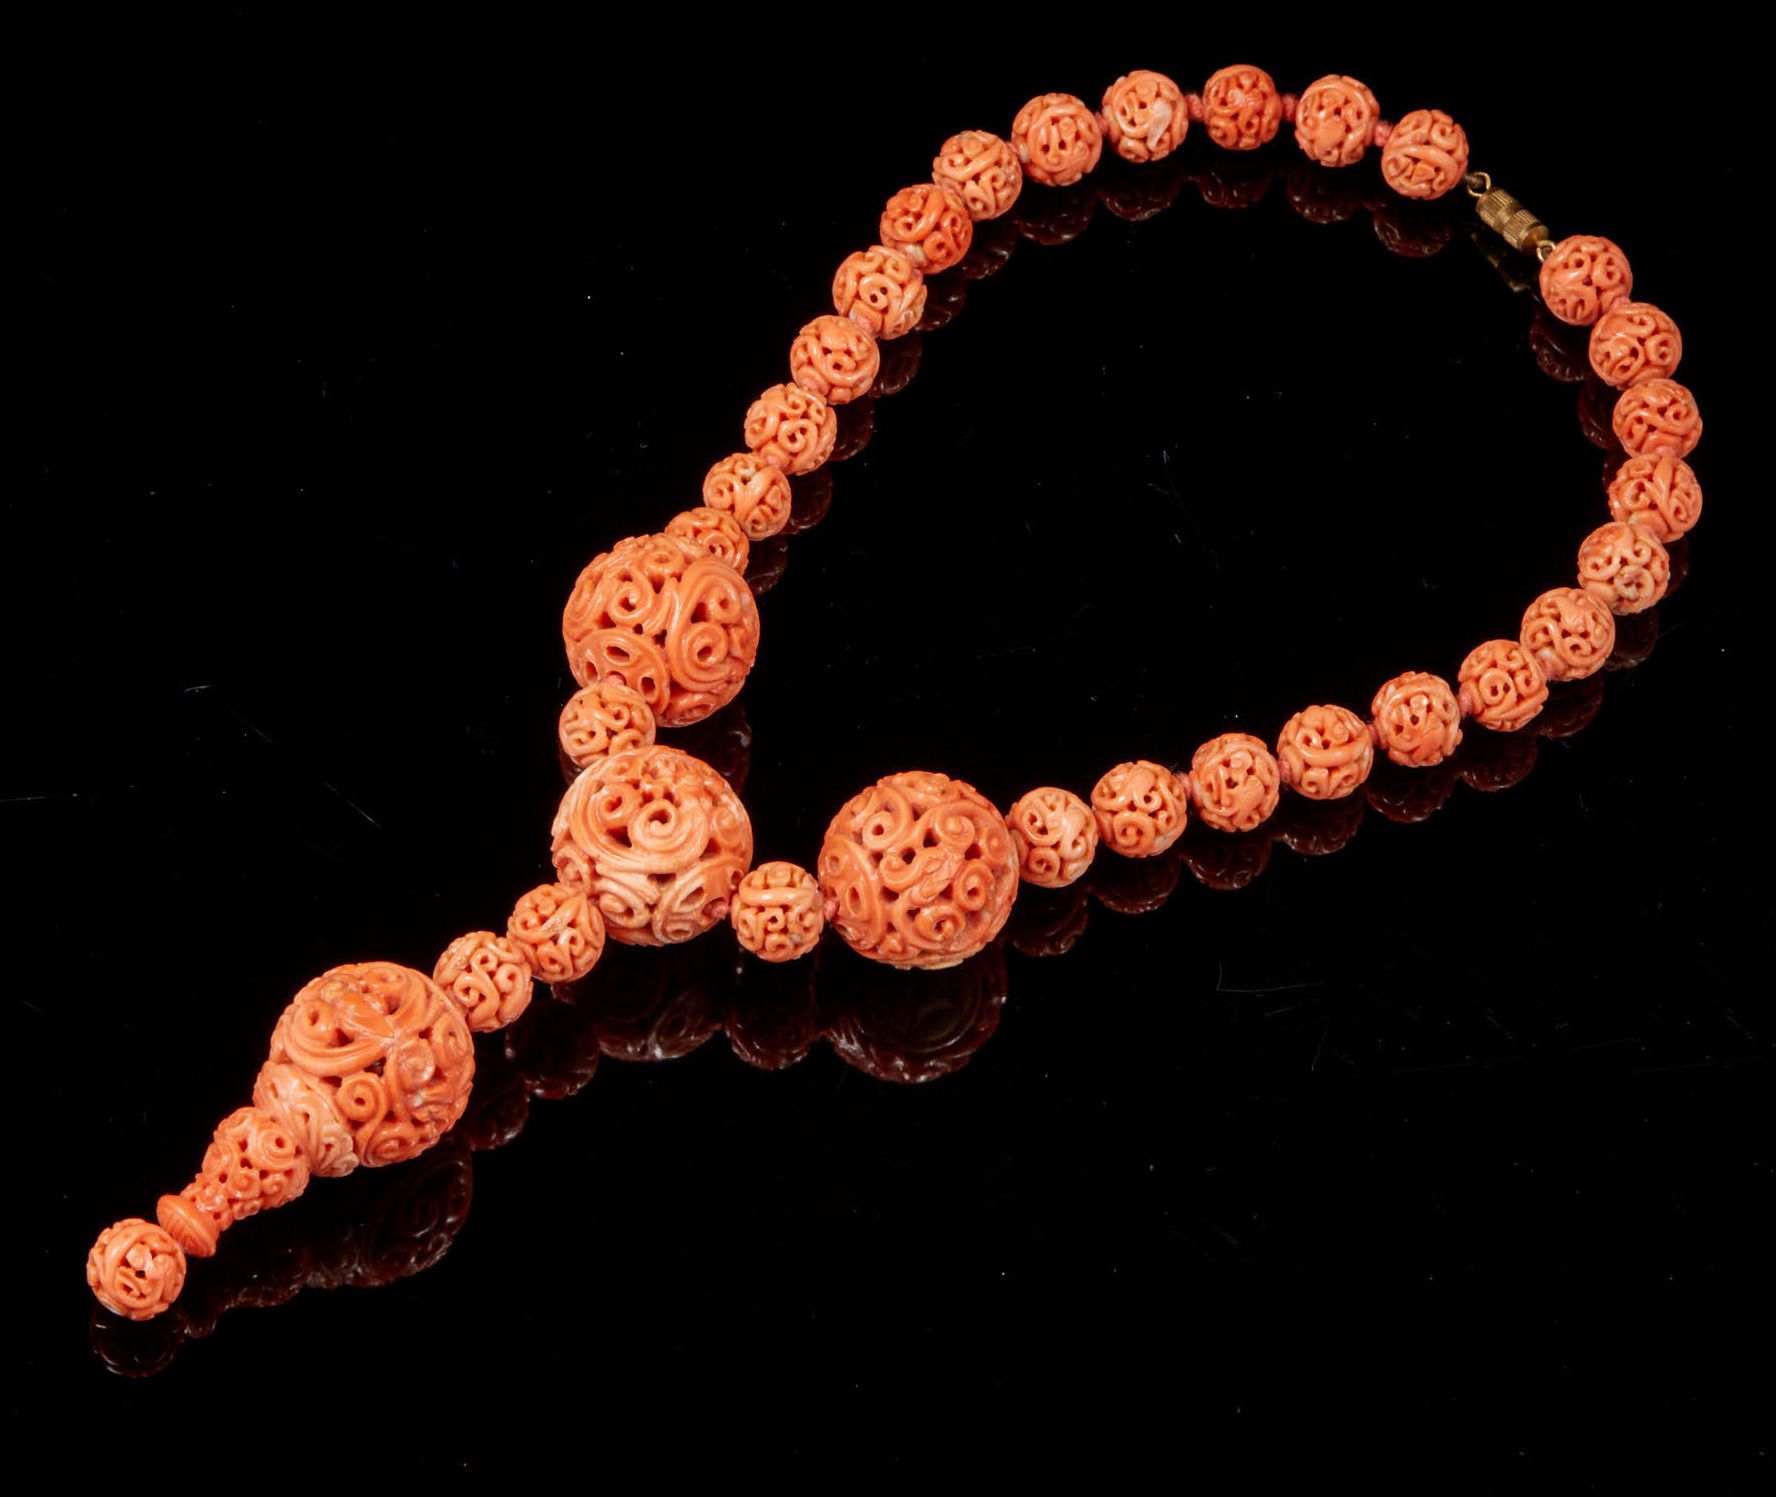 CHINE, vers 1900 由三十二颗雕刻和镂空的珊瑚珍珠组成的项链。
毛重：112,3克。